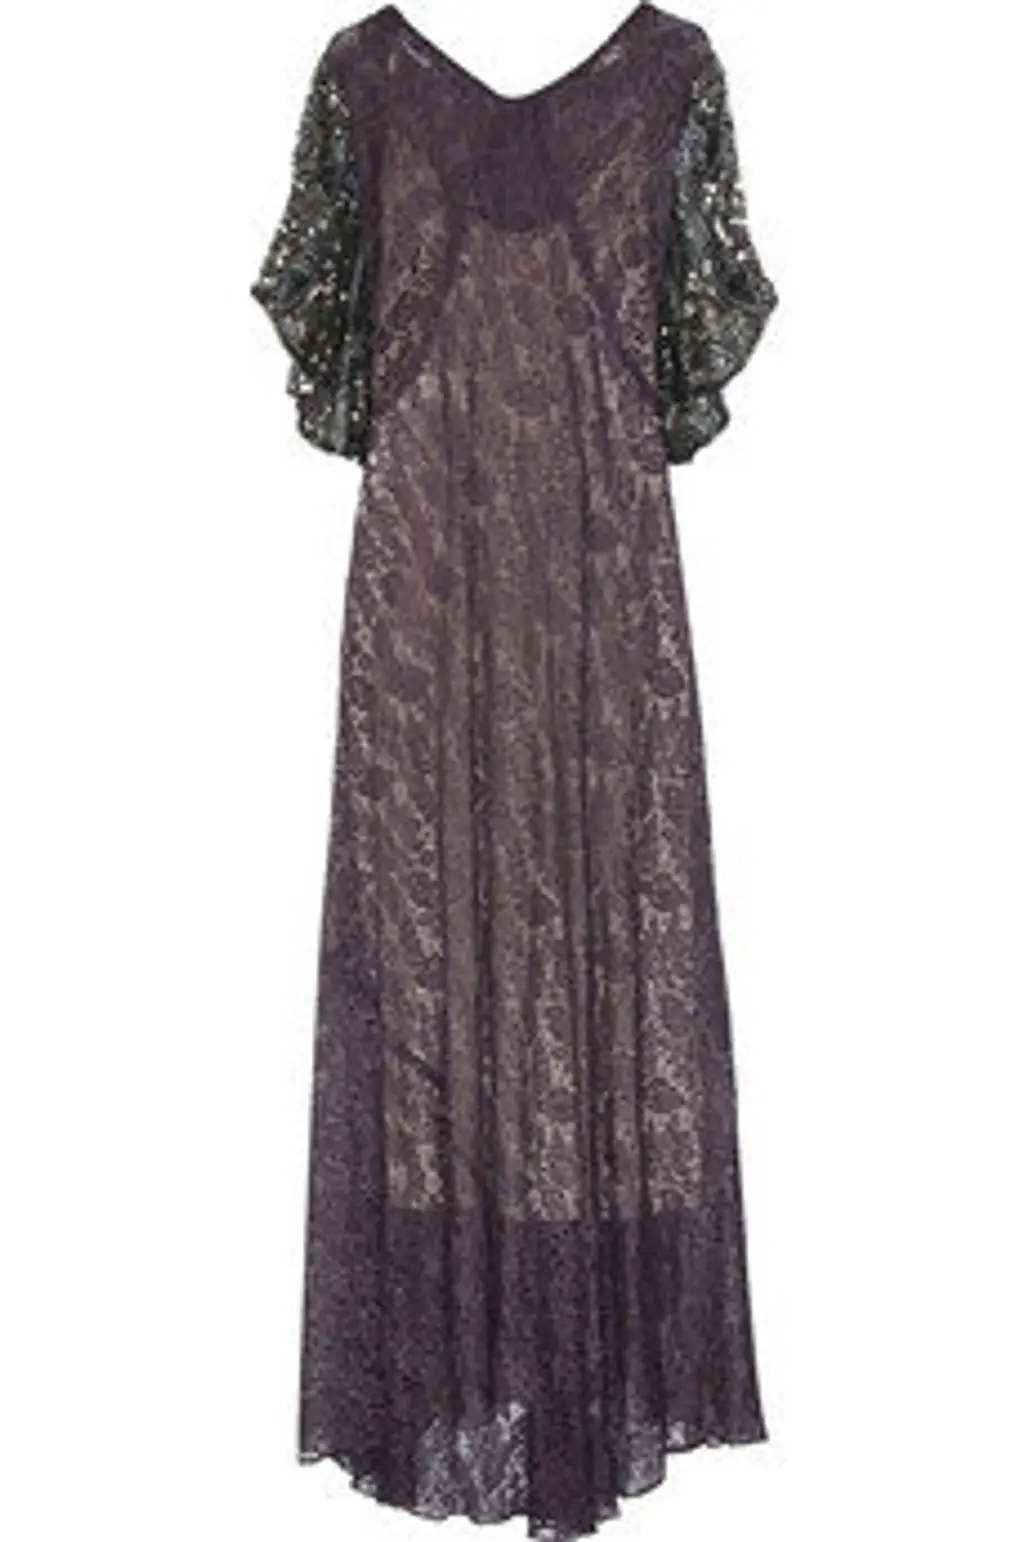 One Vintage Evelene Dress